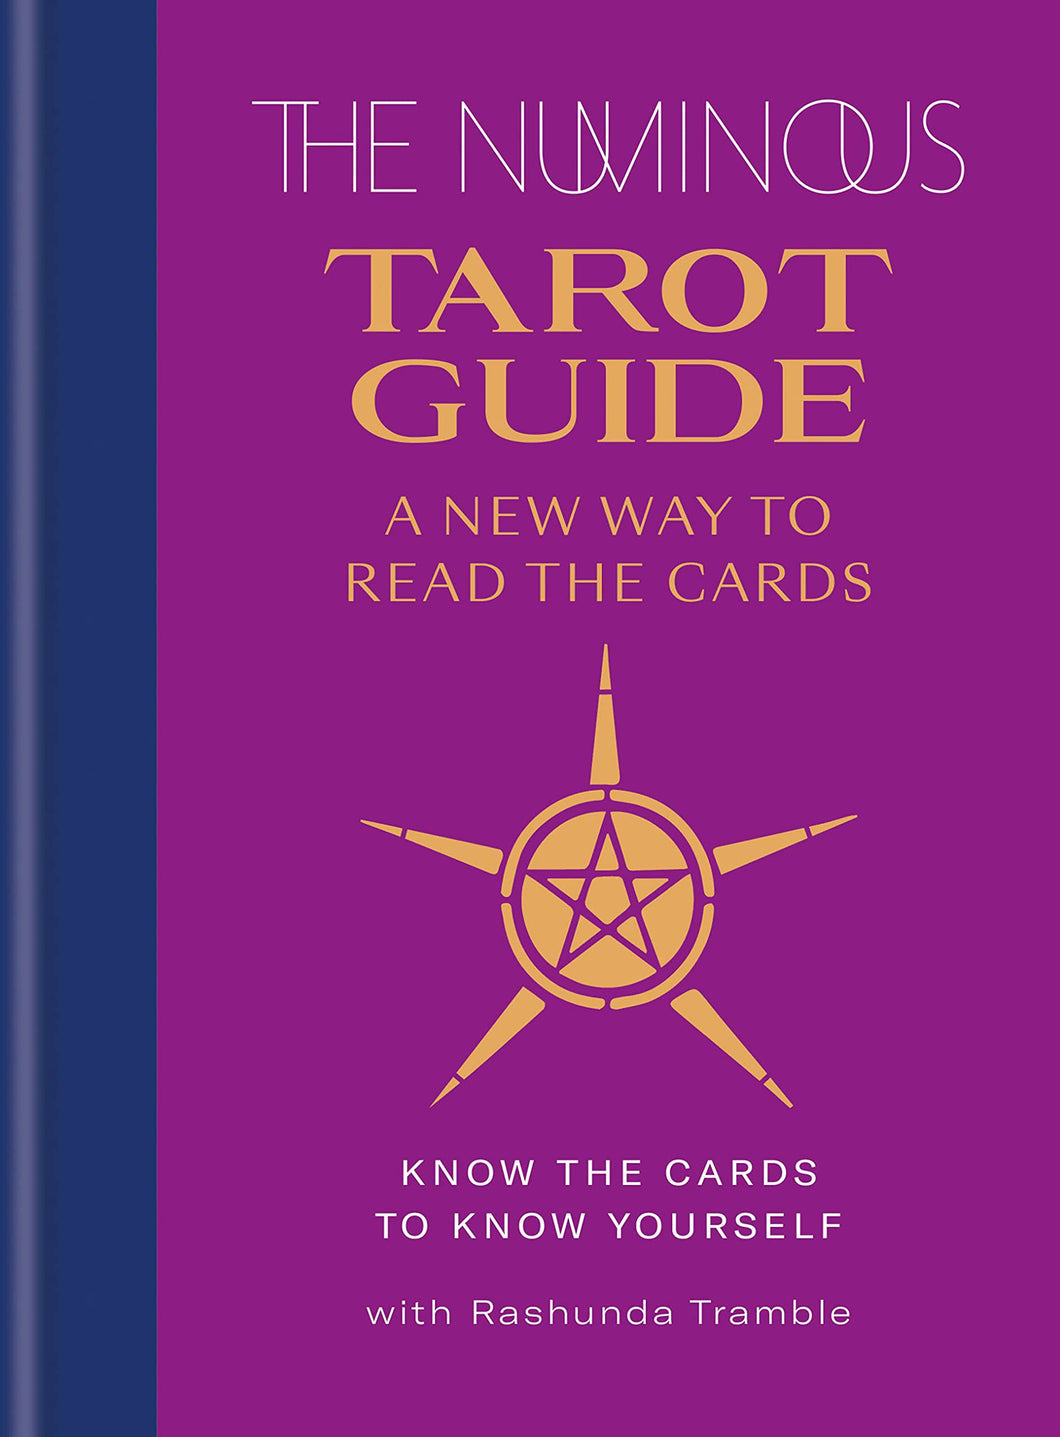 The Numinous Tarot Guide: A New Way To Read The Cards [Rashunda Tramble]